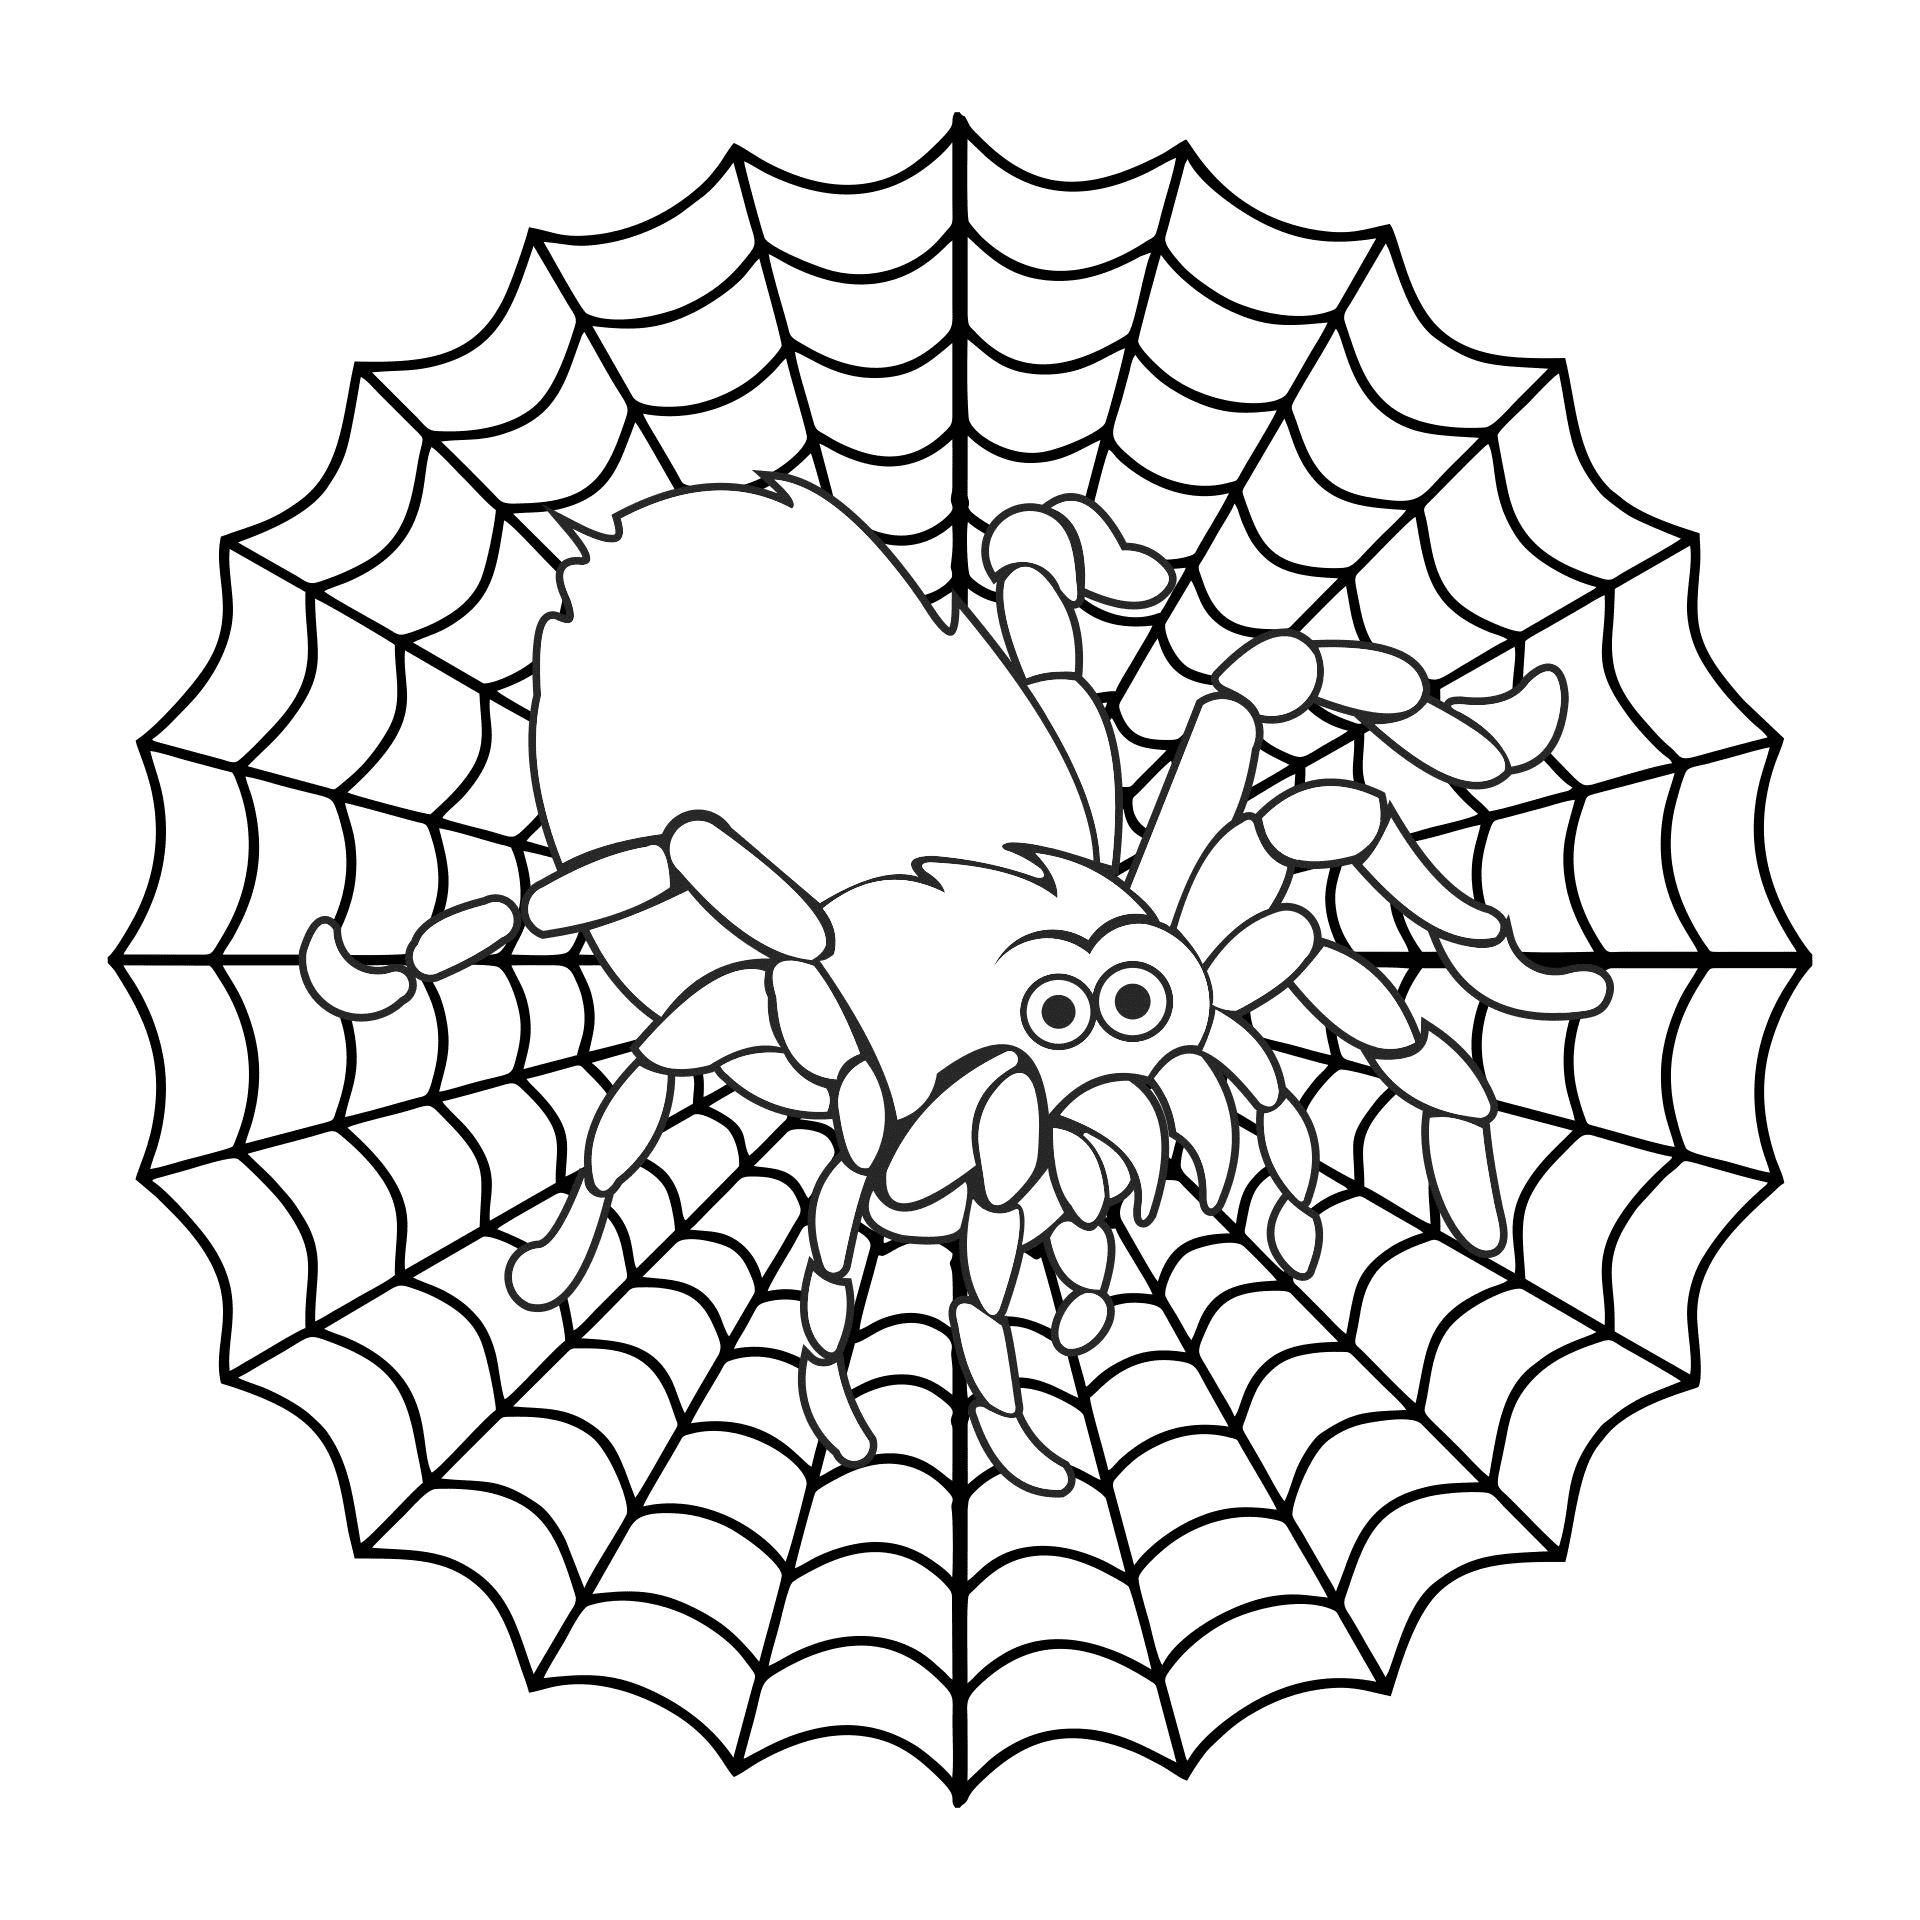 蜘蛛可从蜘蛛打印